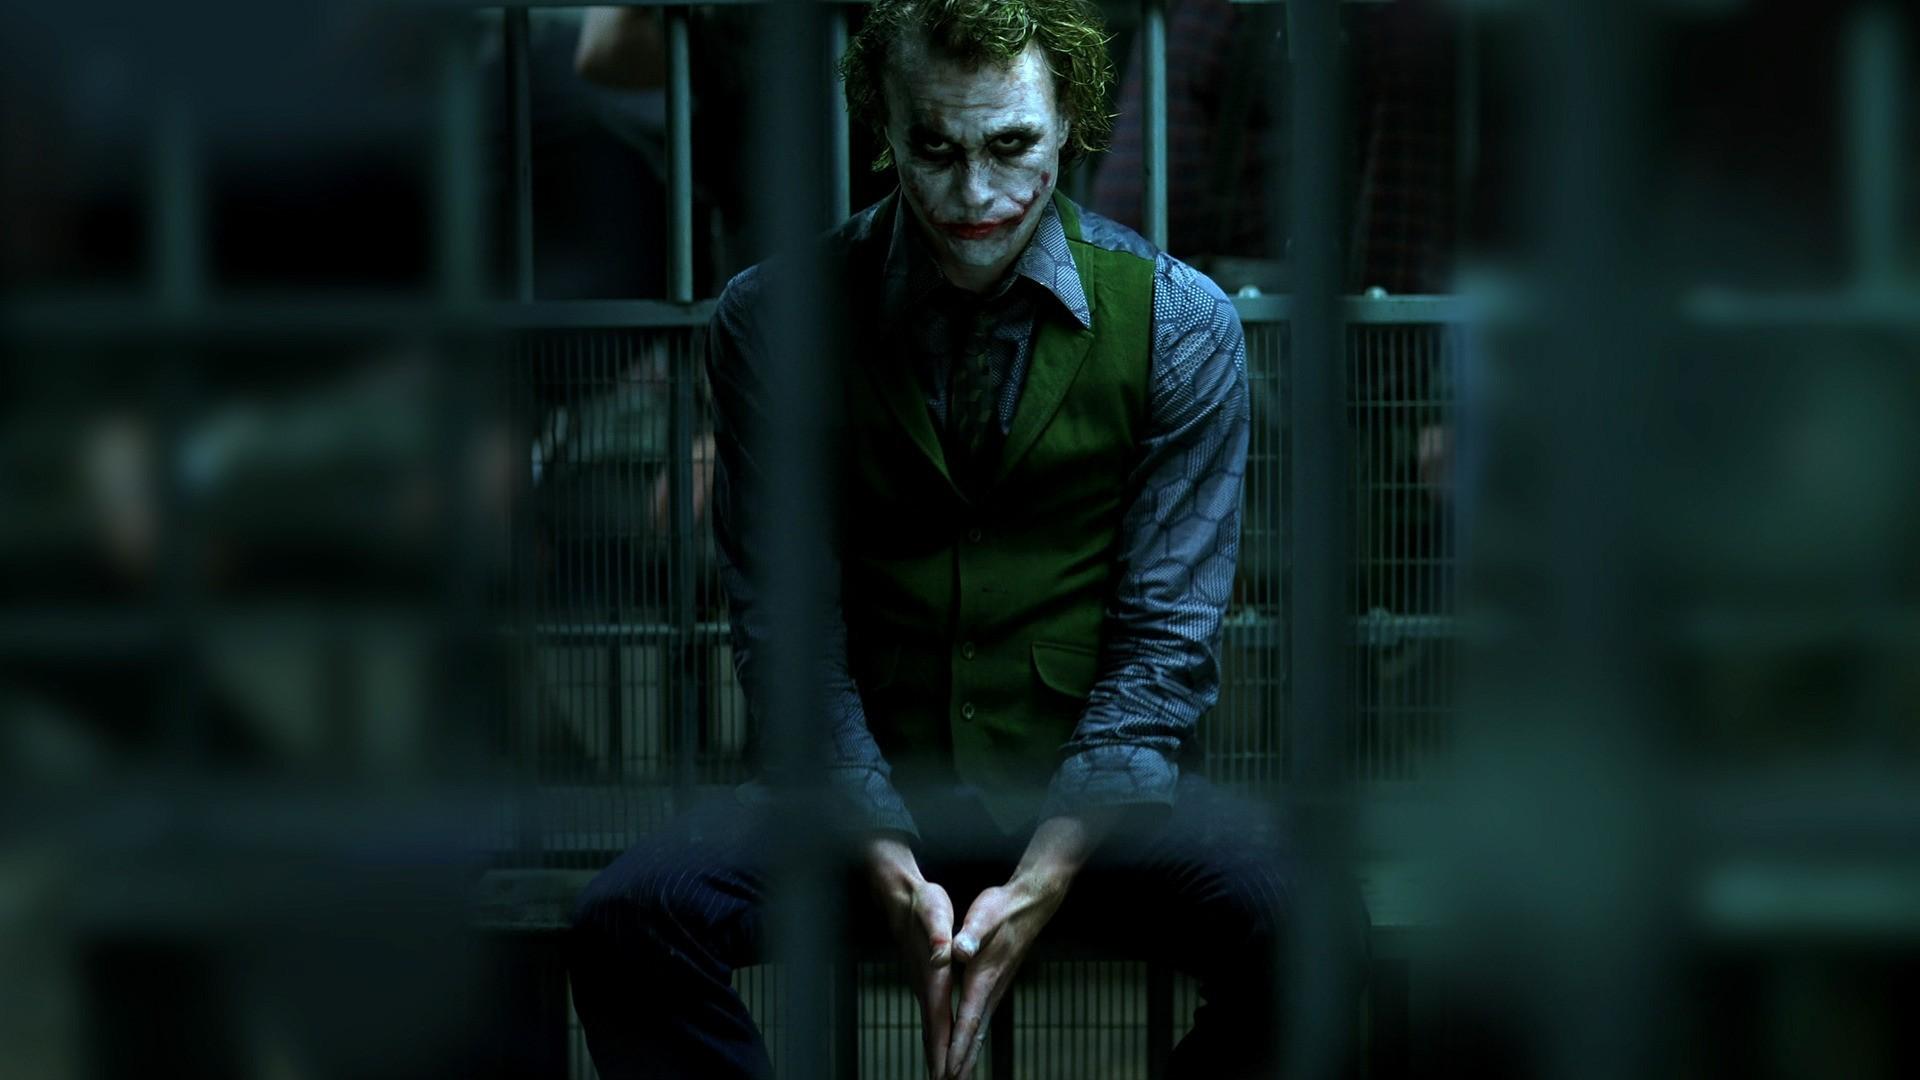 Heath Ledger Joker Wallpaper (the best image in 2018)